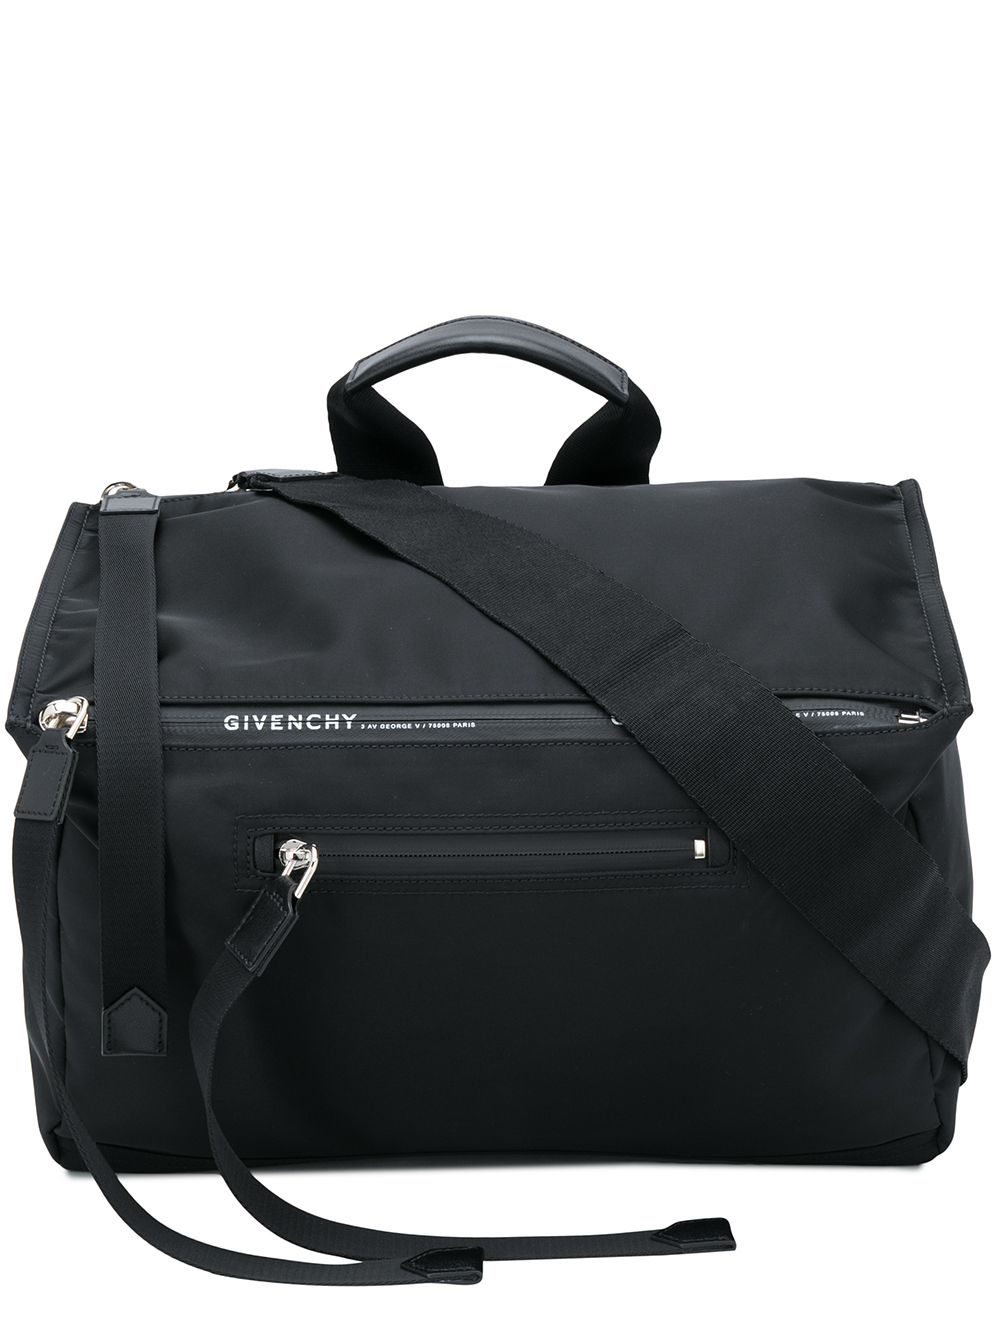 фото Givenchy сумка-тоут с ремнем и верхней ручкой